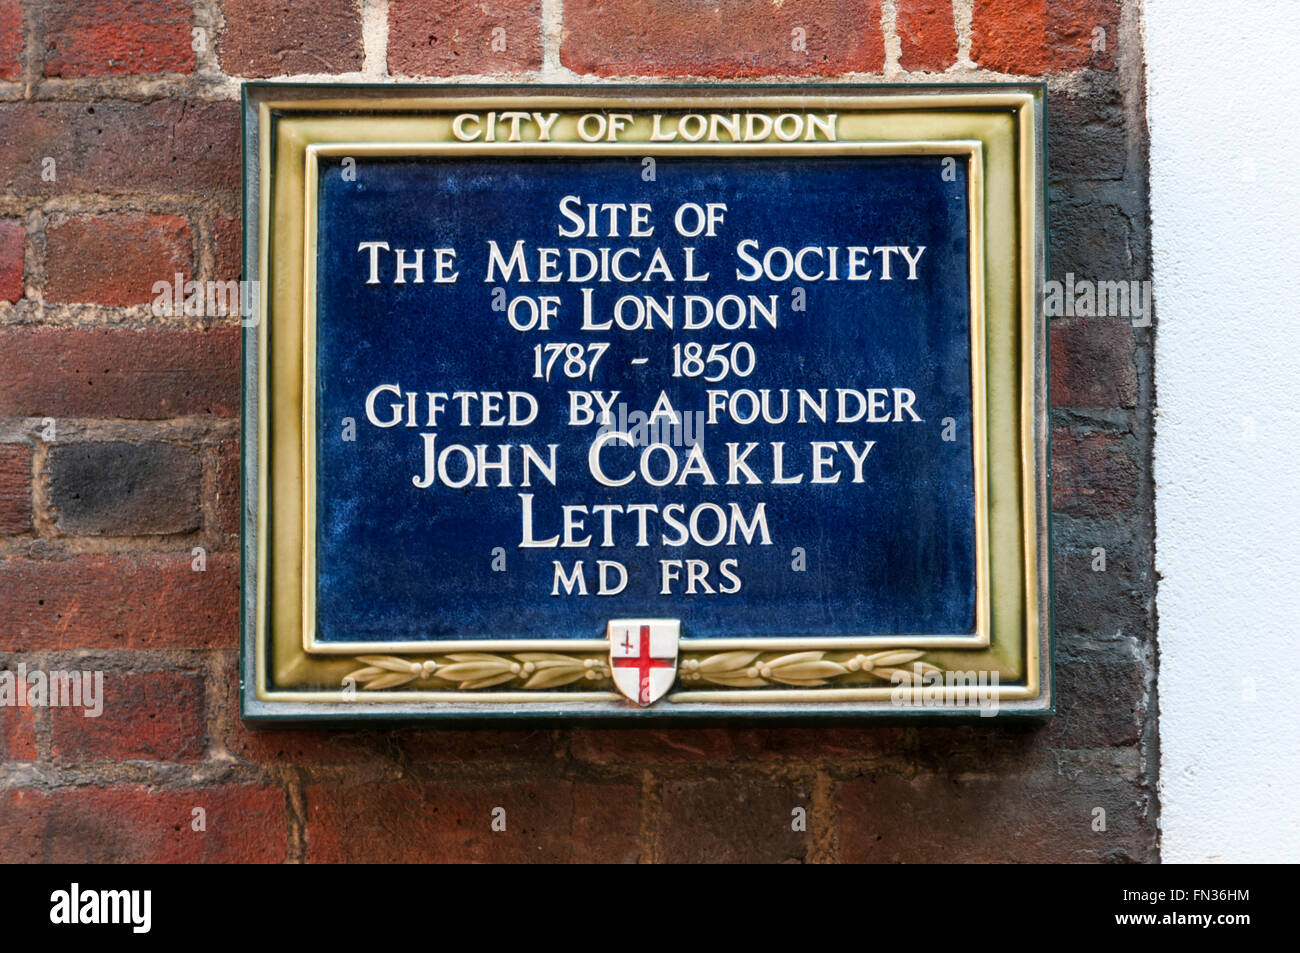 Eine Gedenktafel im Bolzen Gericht markiert den Ort Medical Society of London. Stockfoto